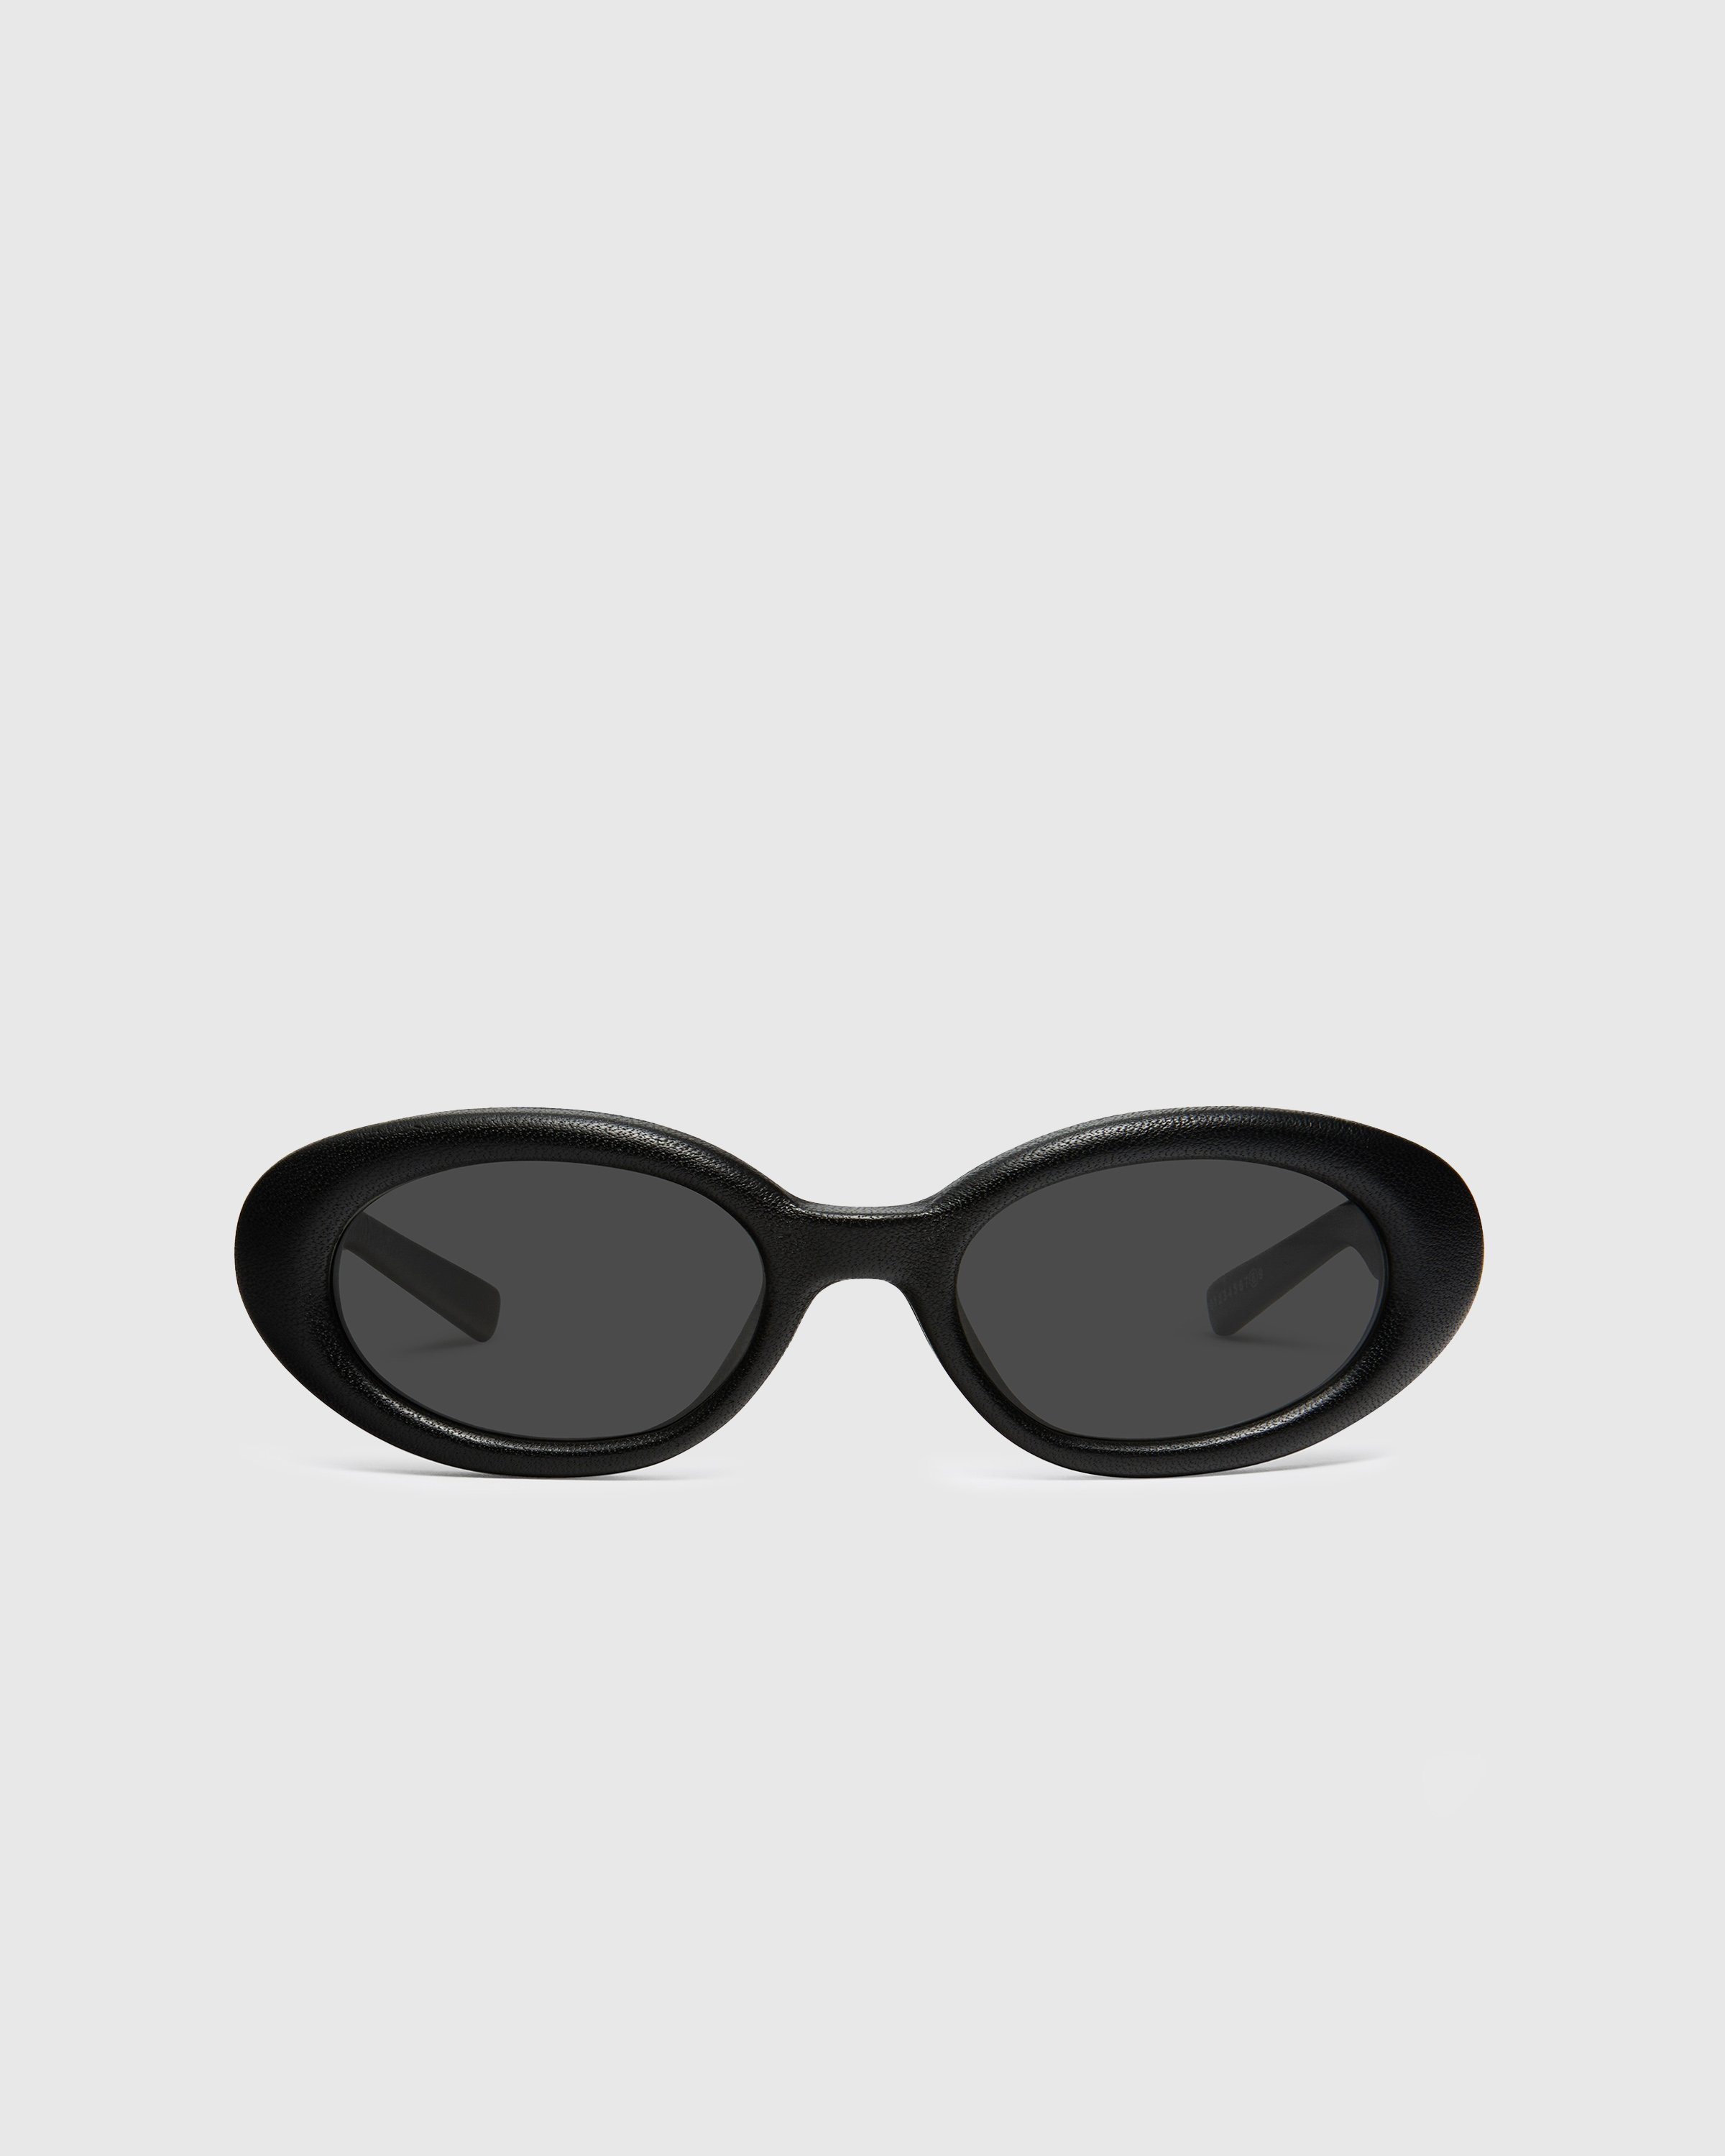 Maison Margiela x Gentle Monster - Sunglasses MM107 LEATHER-L01 - Accessories - Black - Image 1